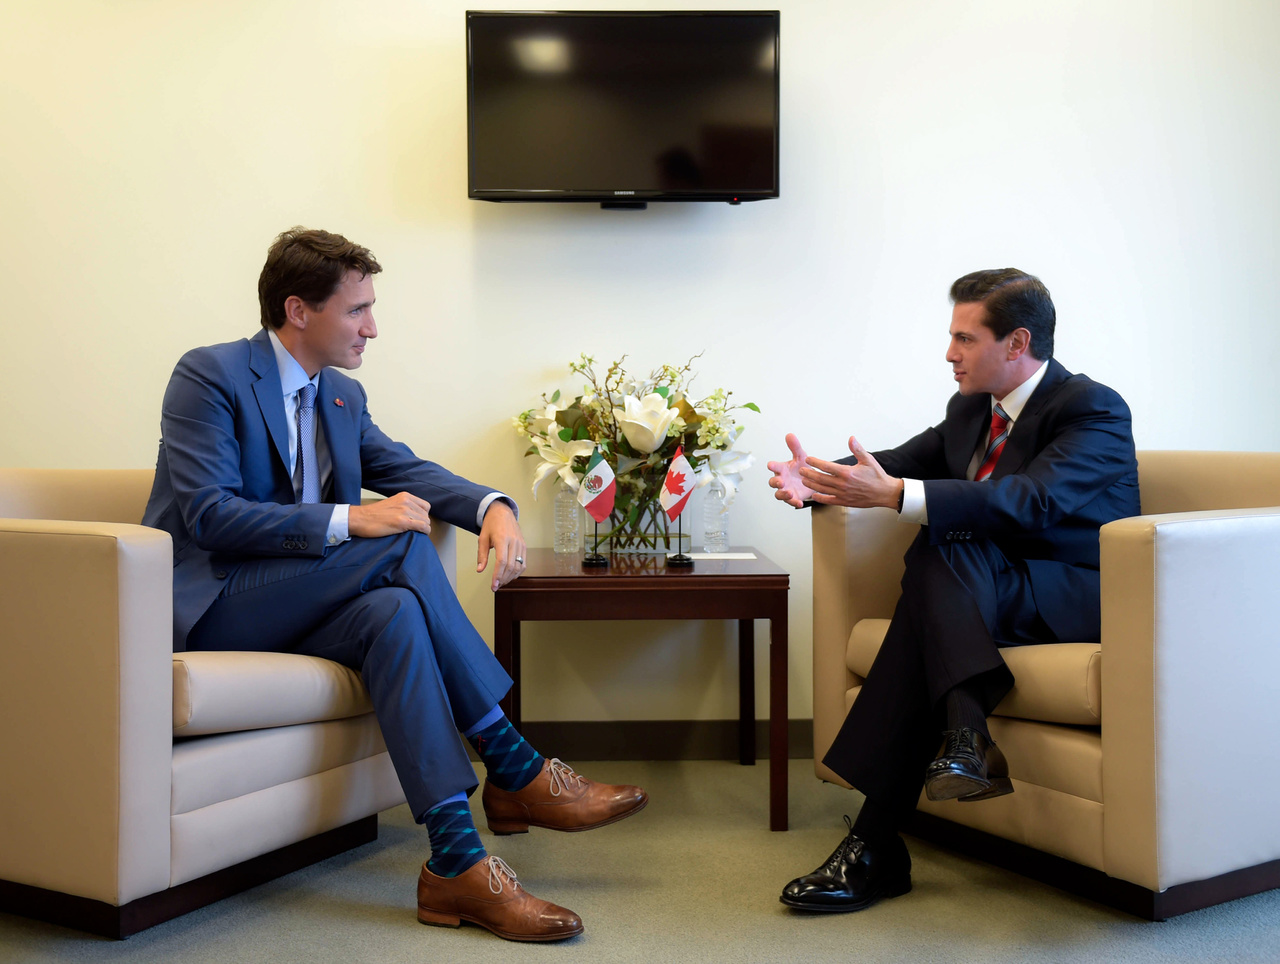 Renegociación. El presidente de México, Enrique Peña Nieto, y el primer ministro de Canadá, Justin Trudeau, dialogaron sobre el proceso de renegociación del Tratado de Libre Comercio de América del Norte, luego de su participación en la 73 Asamblea General de la ONU. (NOTIMEX)